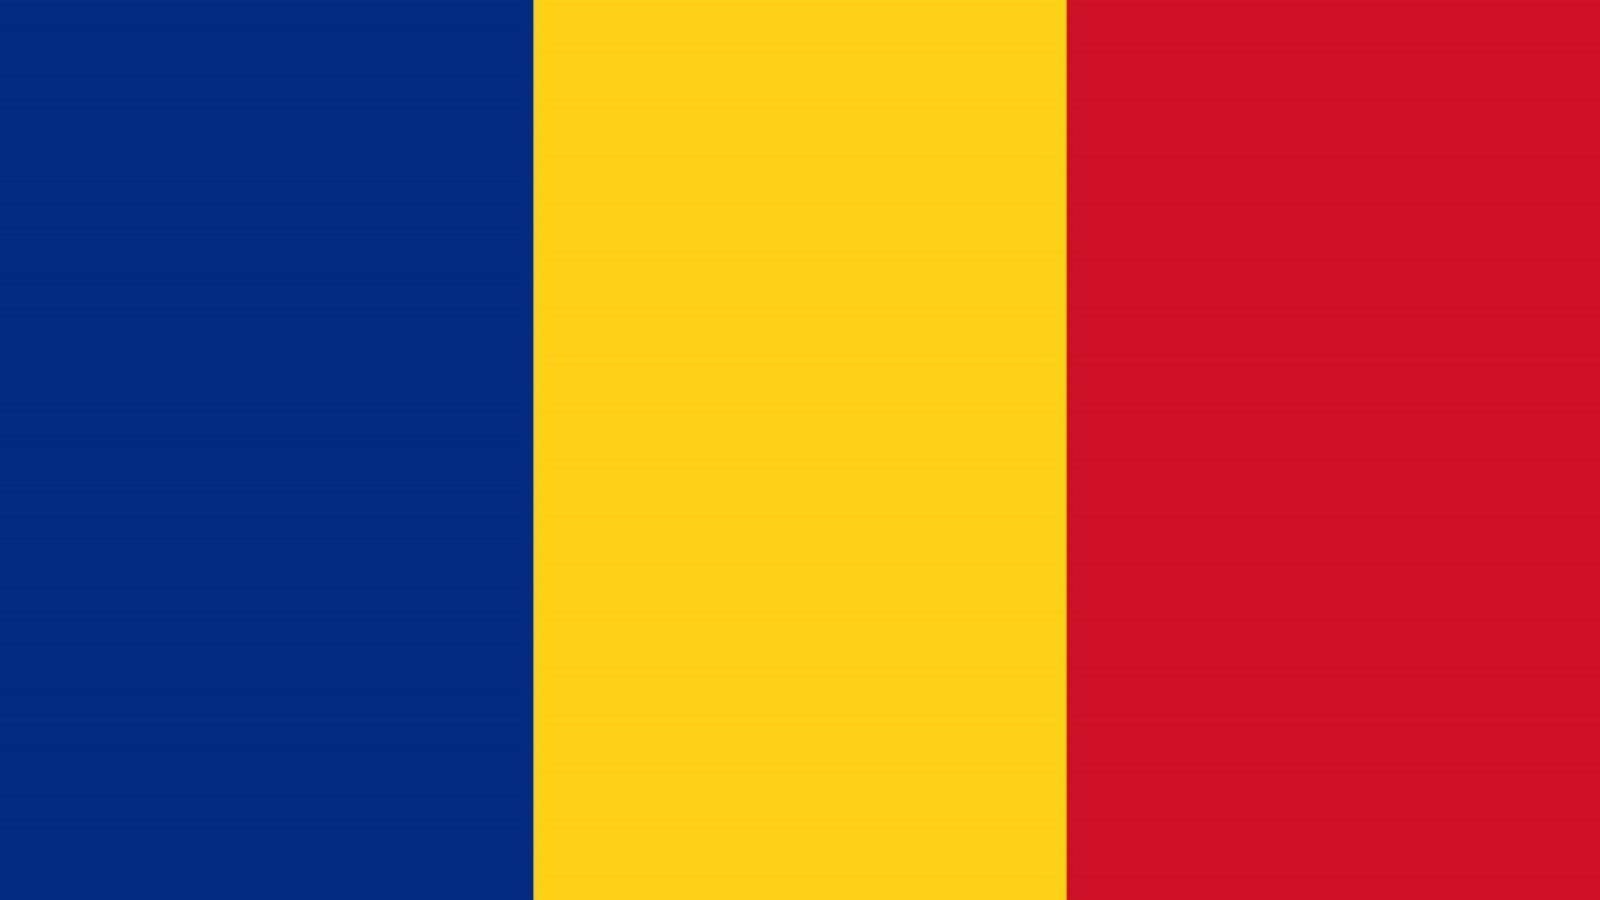 Rumænsk regering fremme programmering